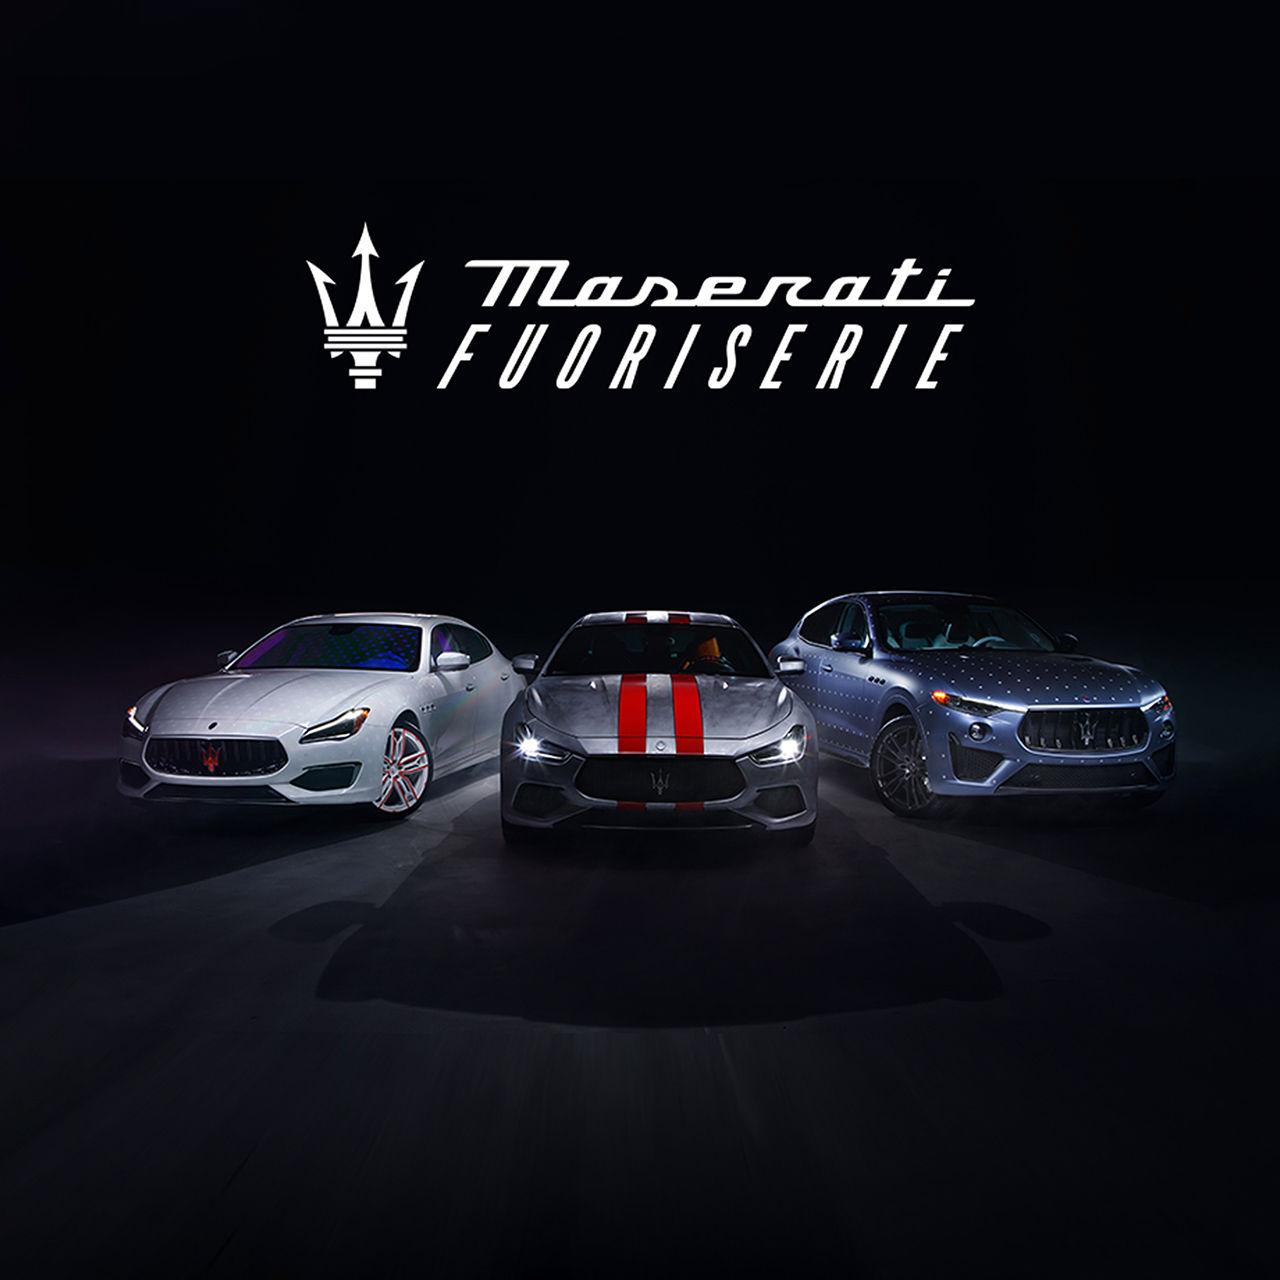 3 modèles Maserati Fuoriserie alignés les uns à côté des autres